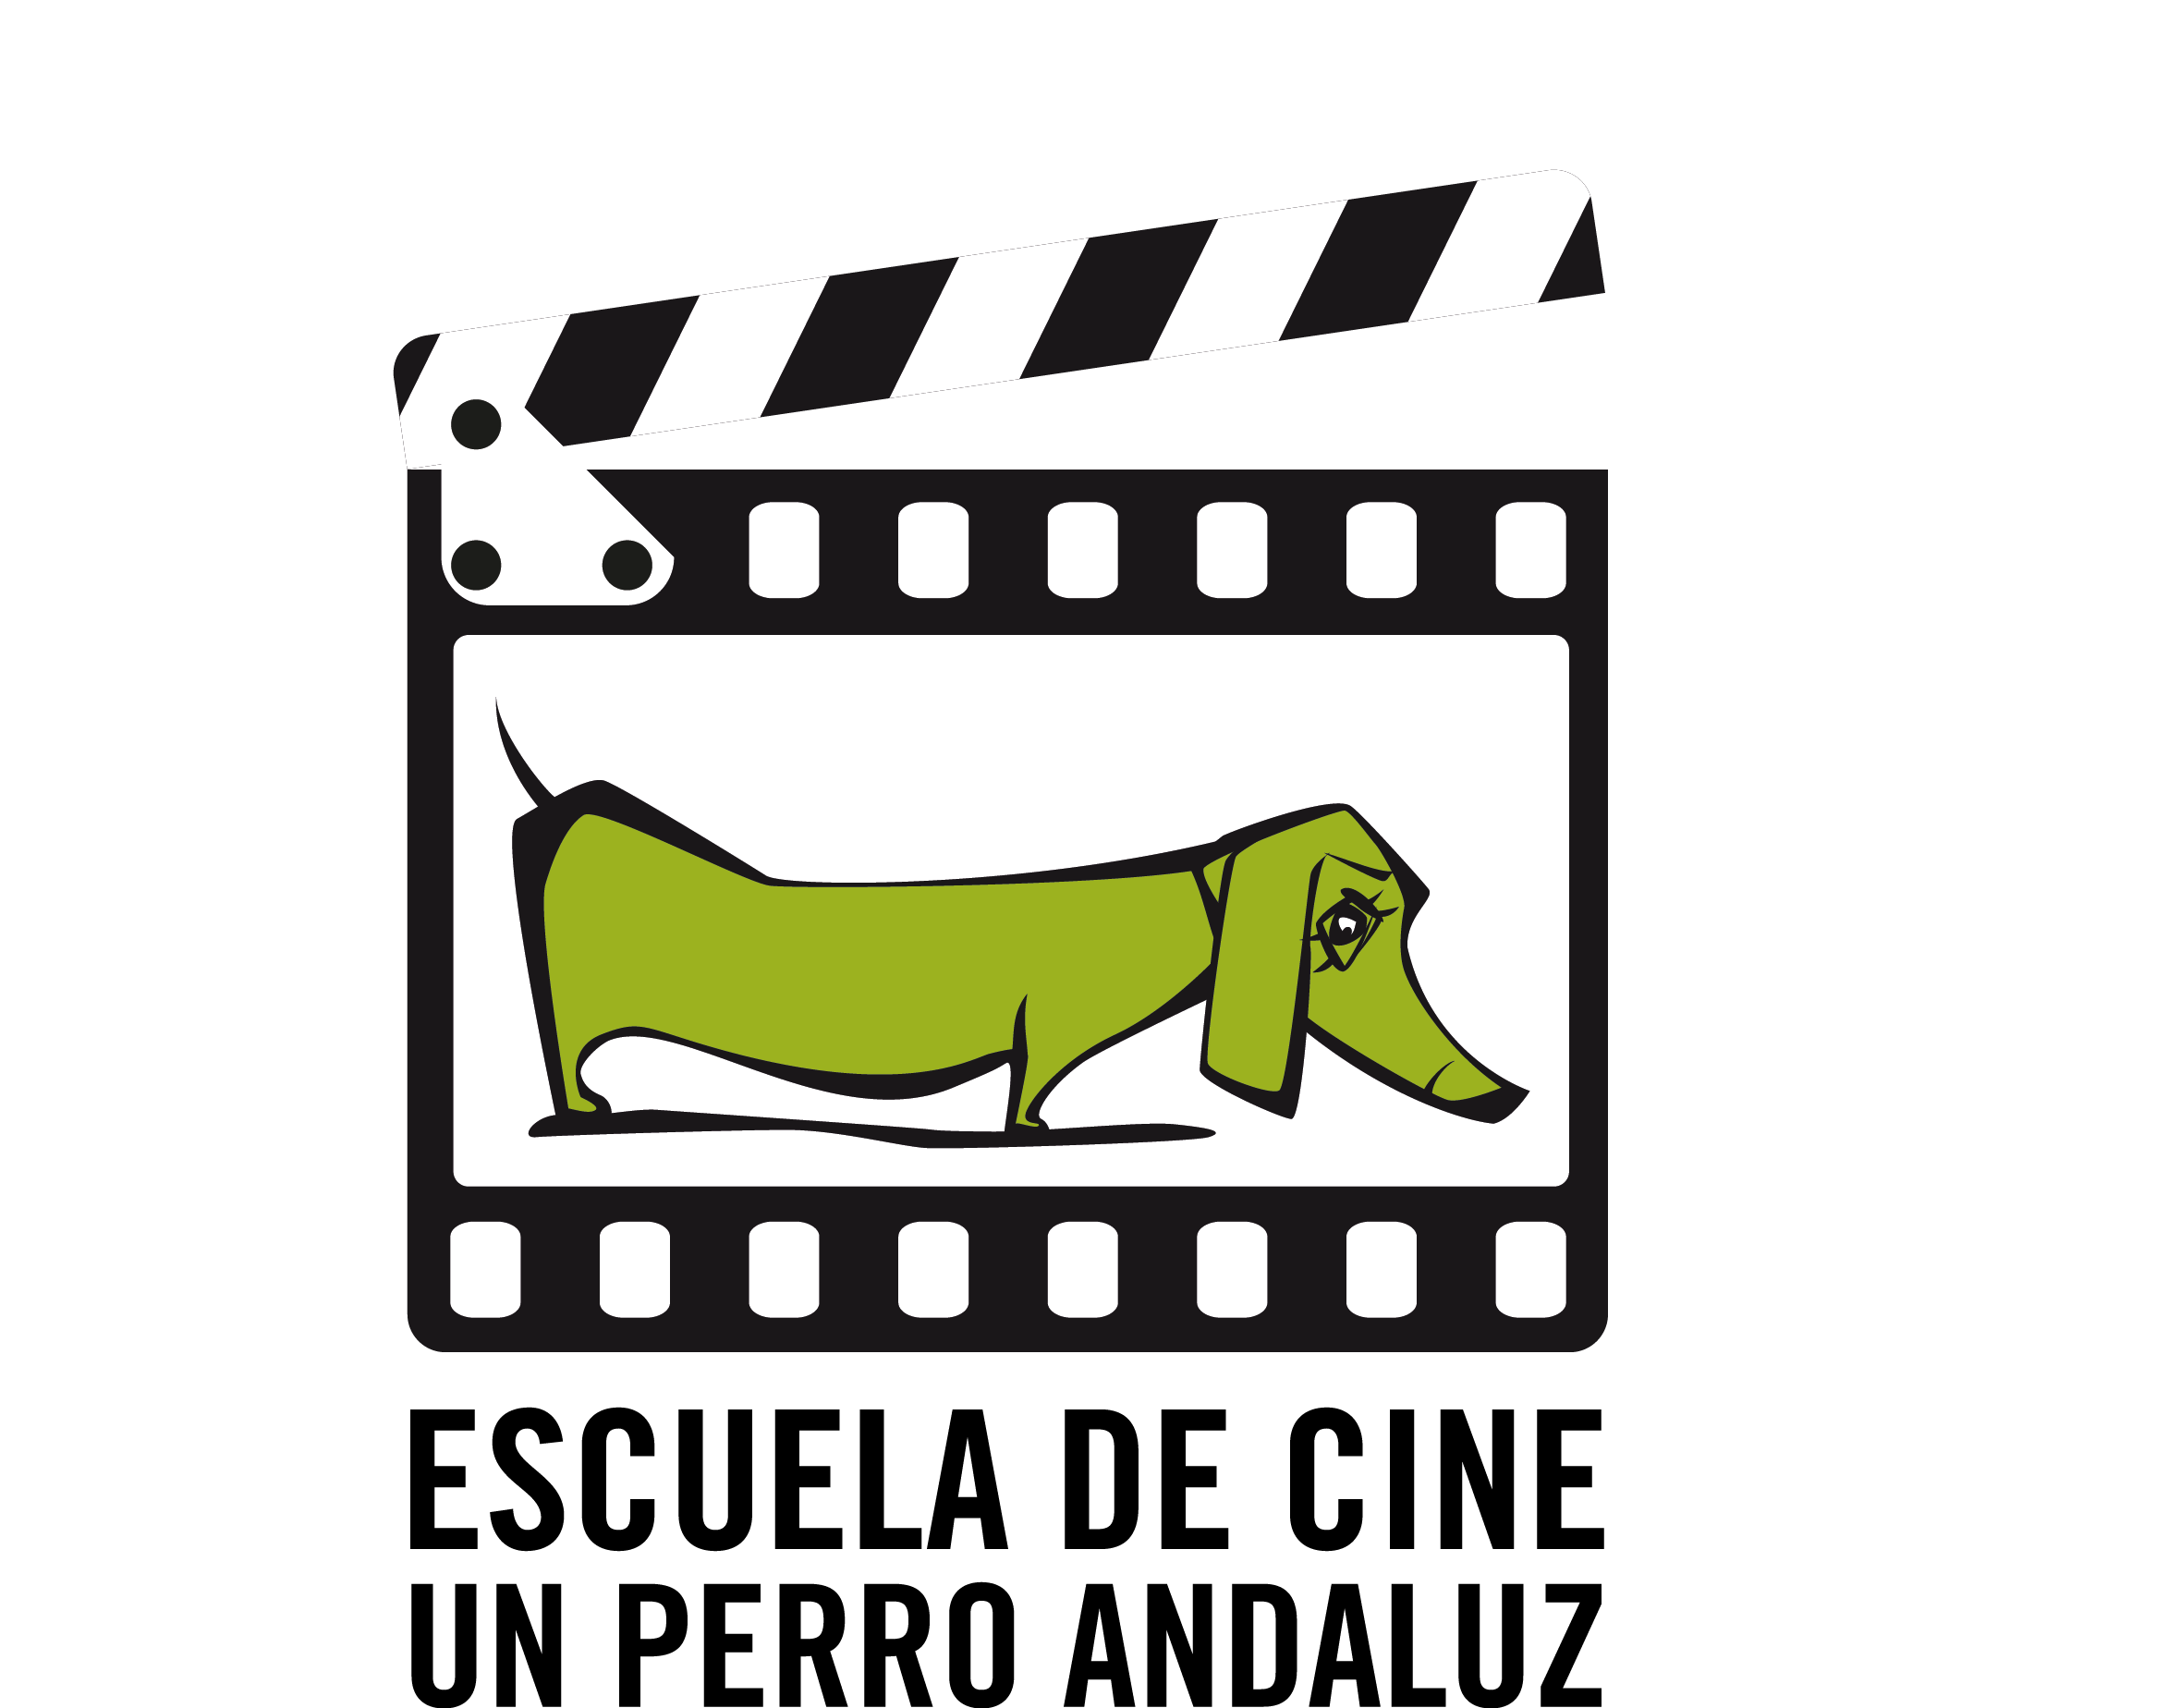 El blog del perro andaluz